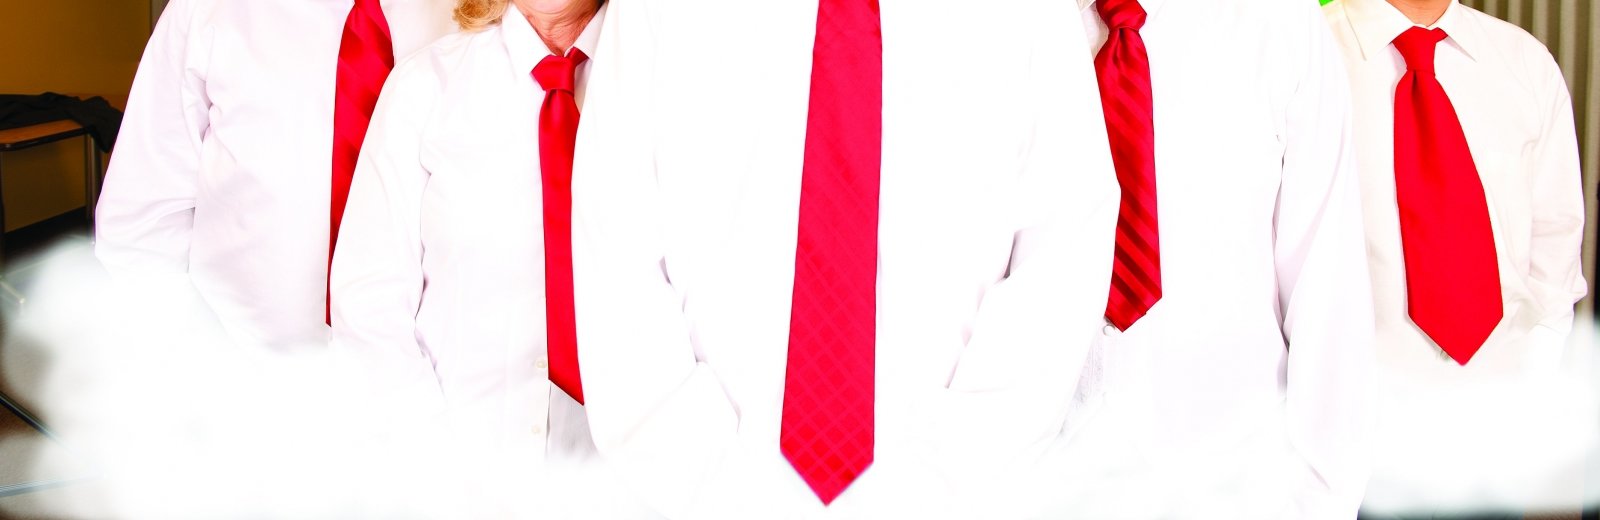 red ties